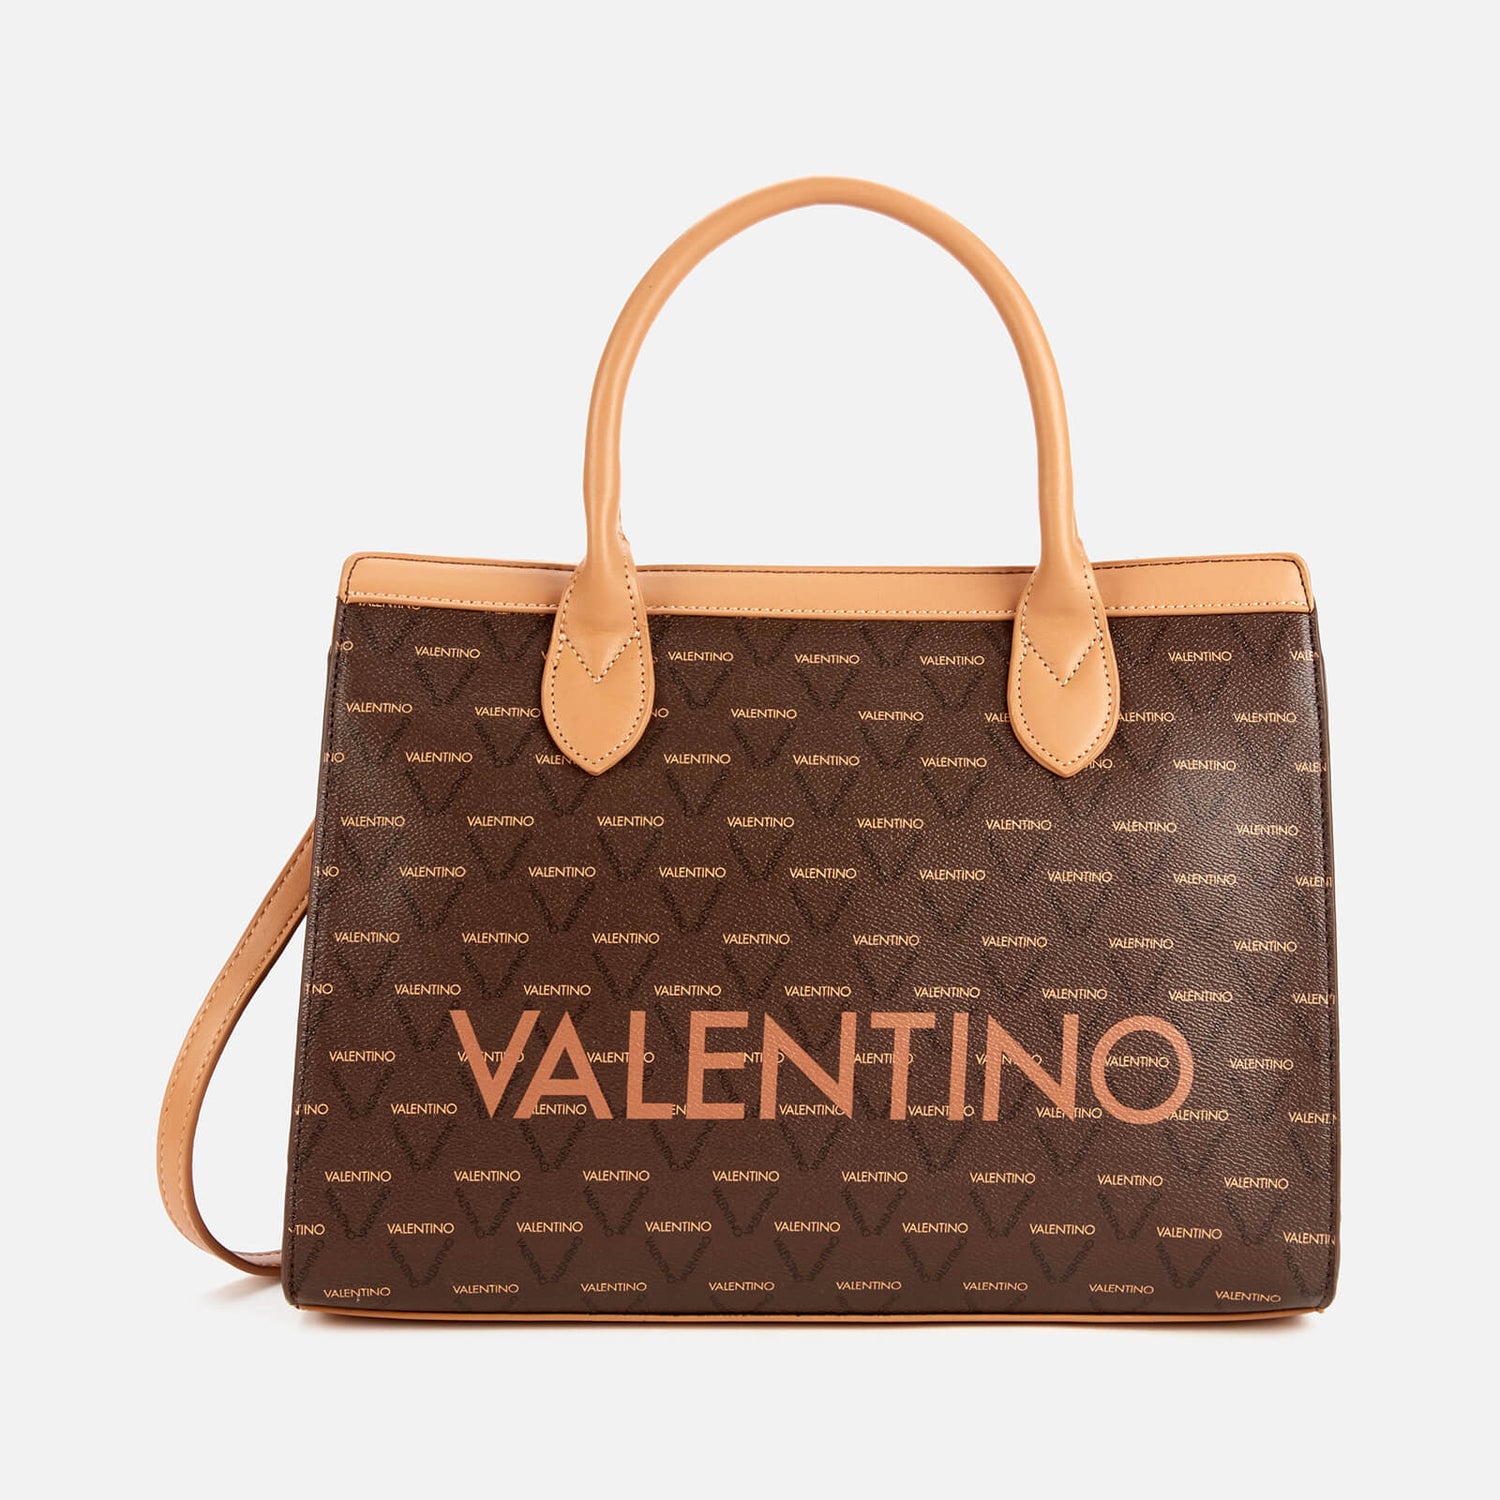 Valentino Bags Women's Liuto Shopper Tote - Multi